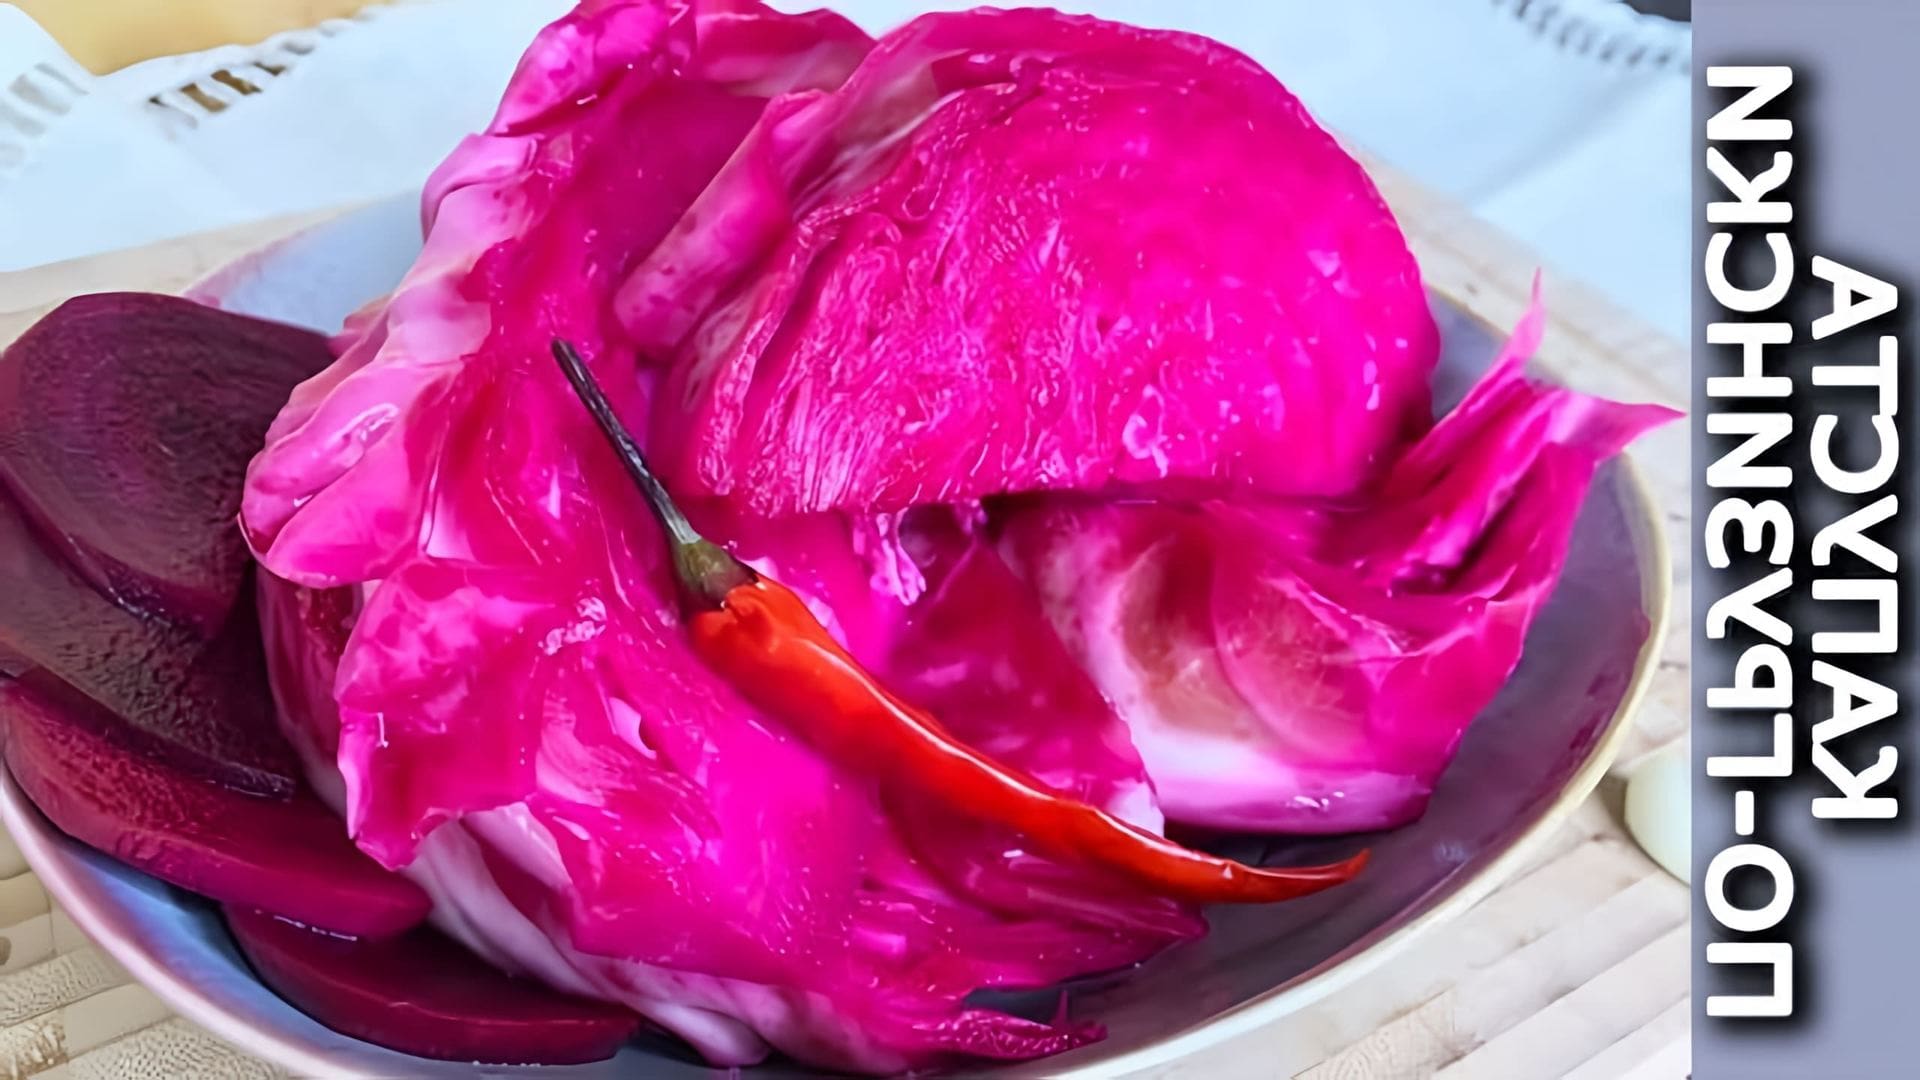 В этом видео-ролике будет показан простой и быстрый рецепт приготовления хрустящей маринованной капусты по-грузински со свеклой